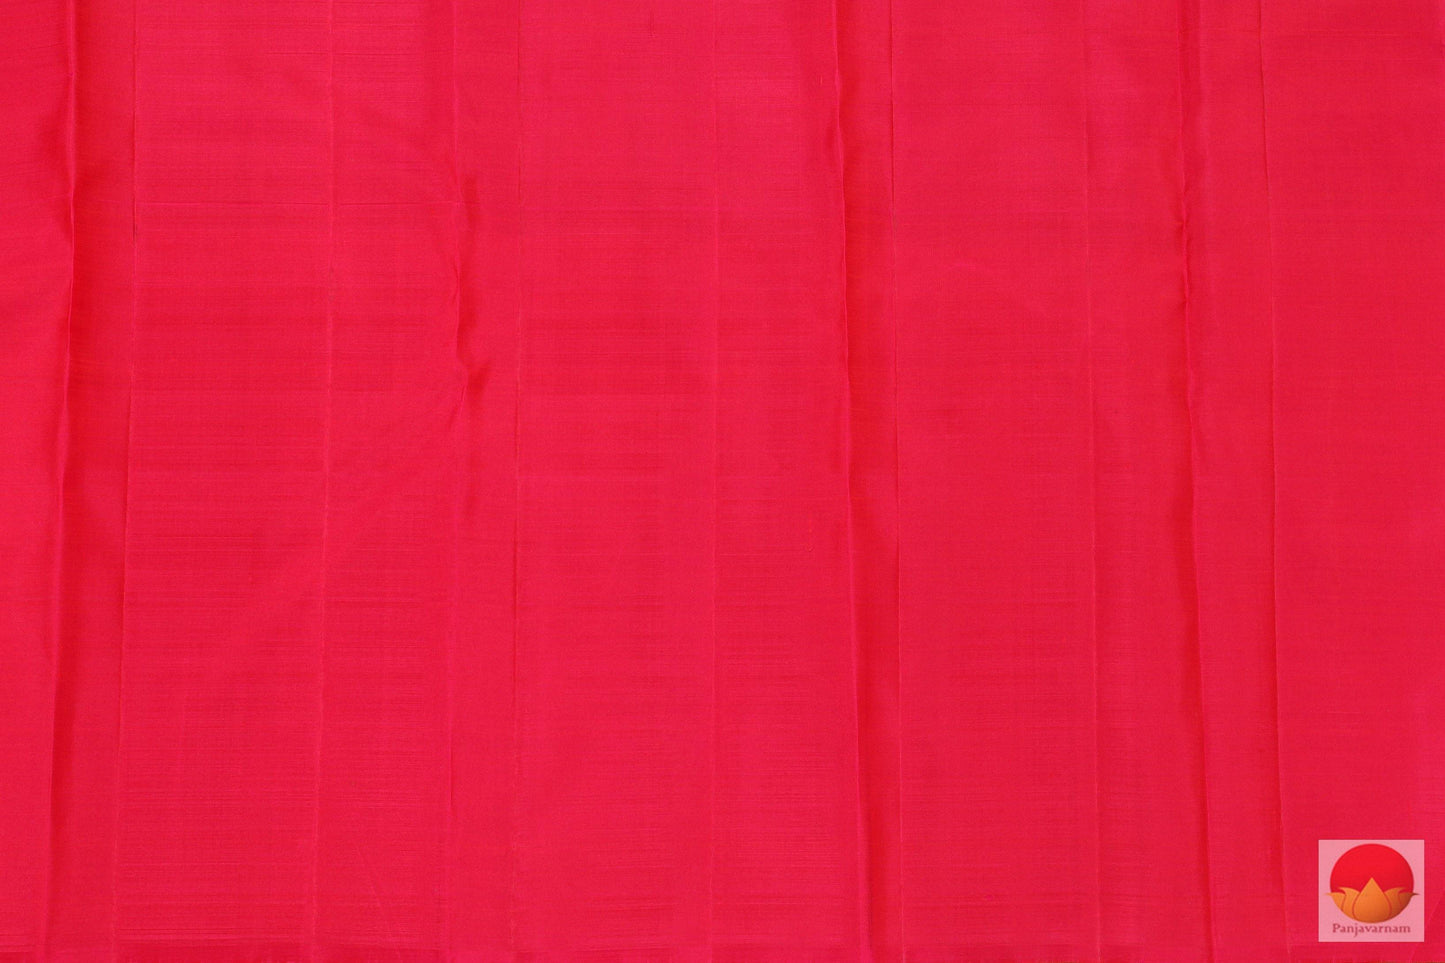 Black & Mustard - Temple Border - Handwoven Pure Silk Kanjivaram Saree - Pure Zari - PV G 1995 Archives - Silk Sari - Panjavarnam